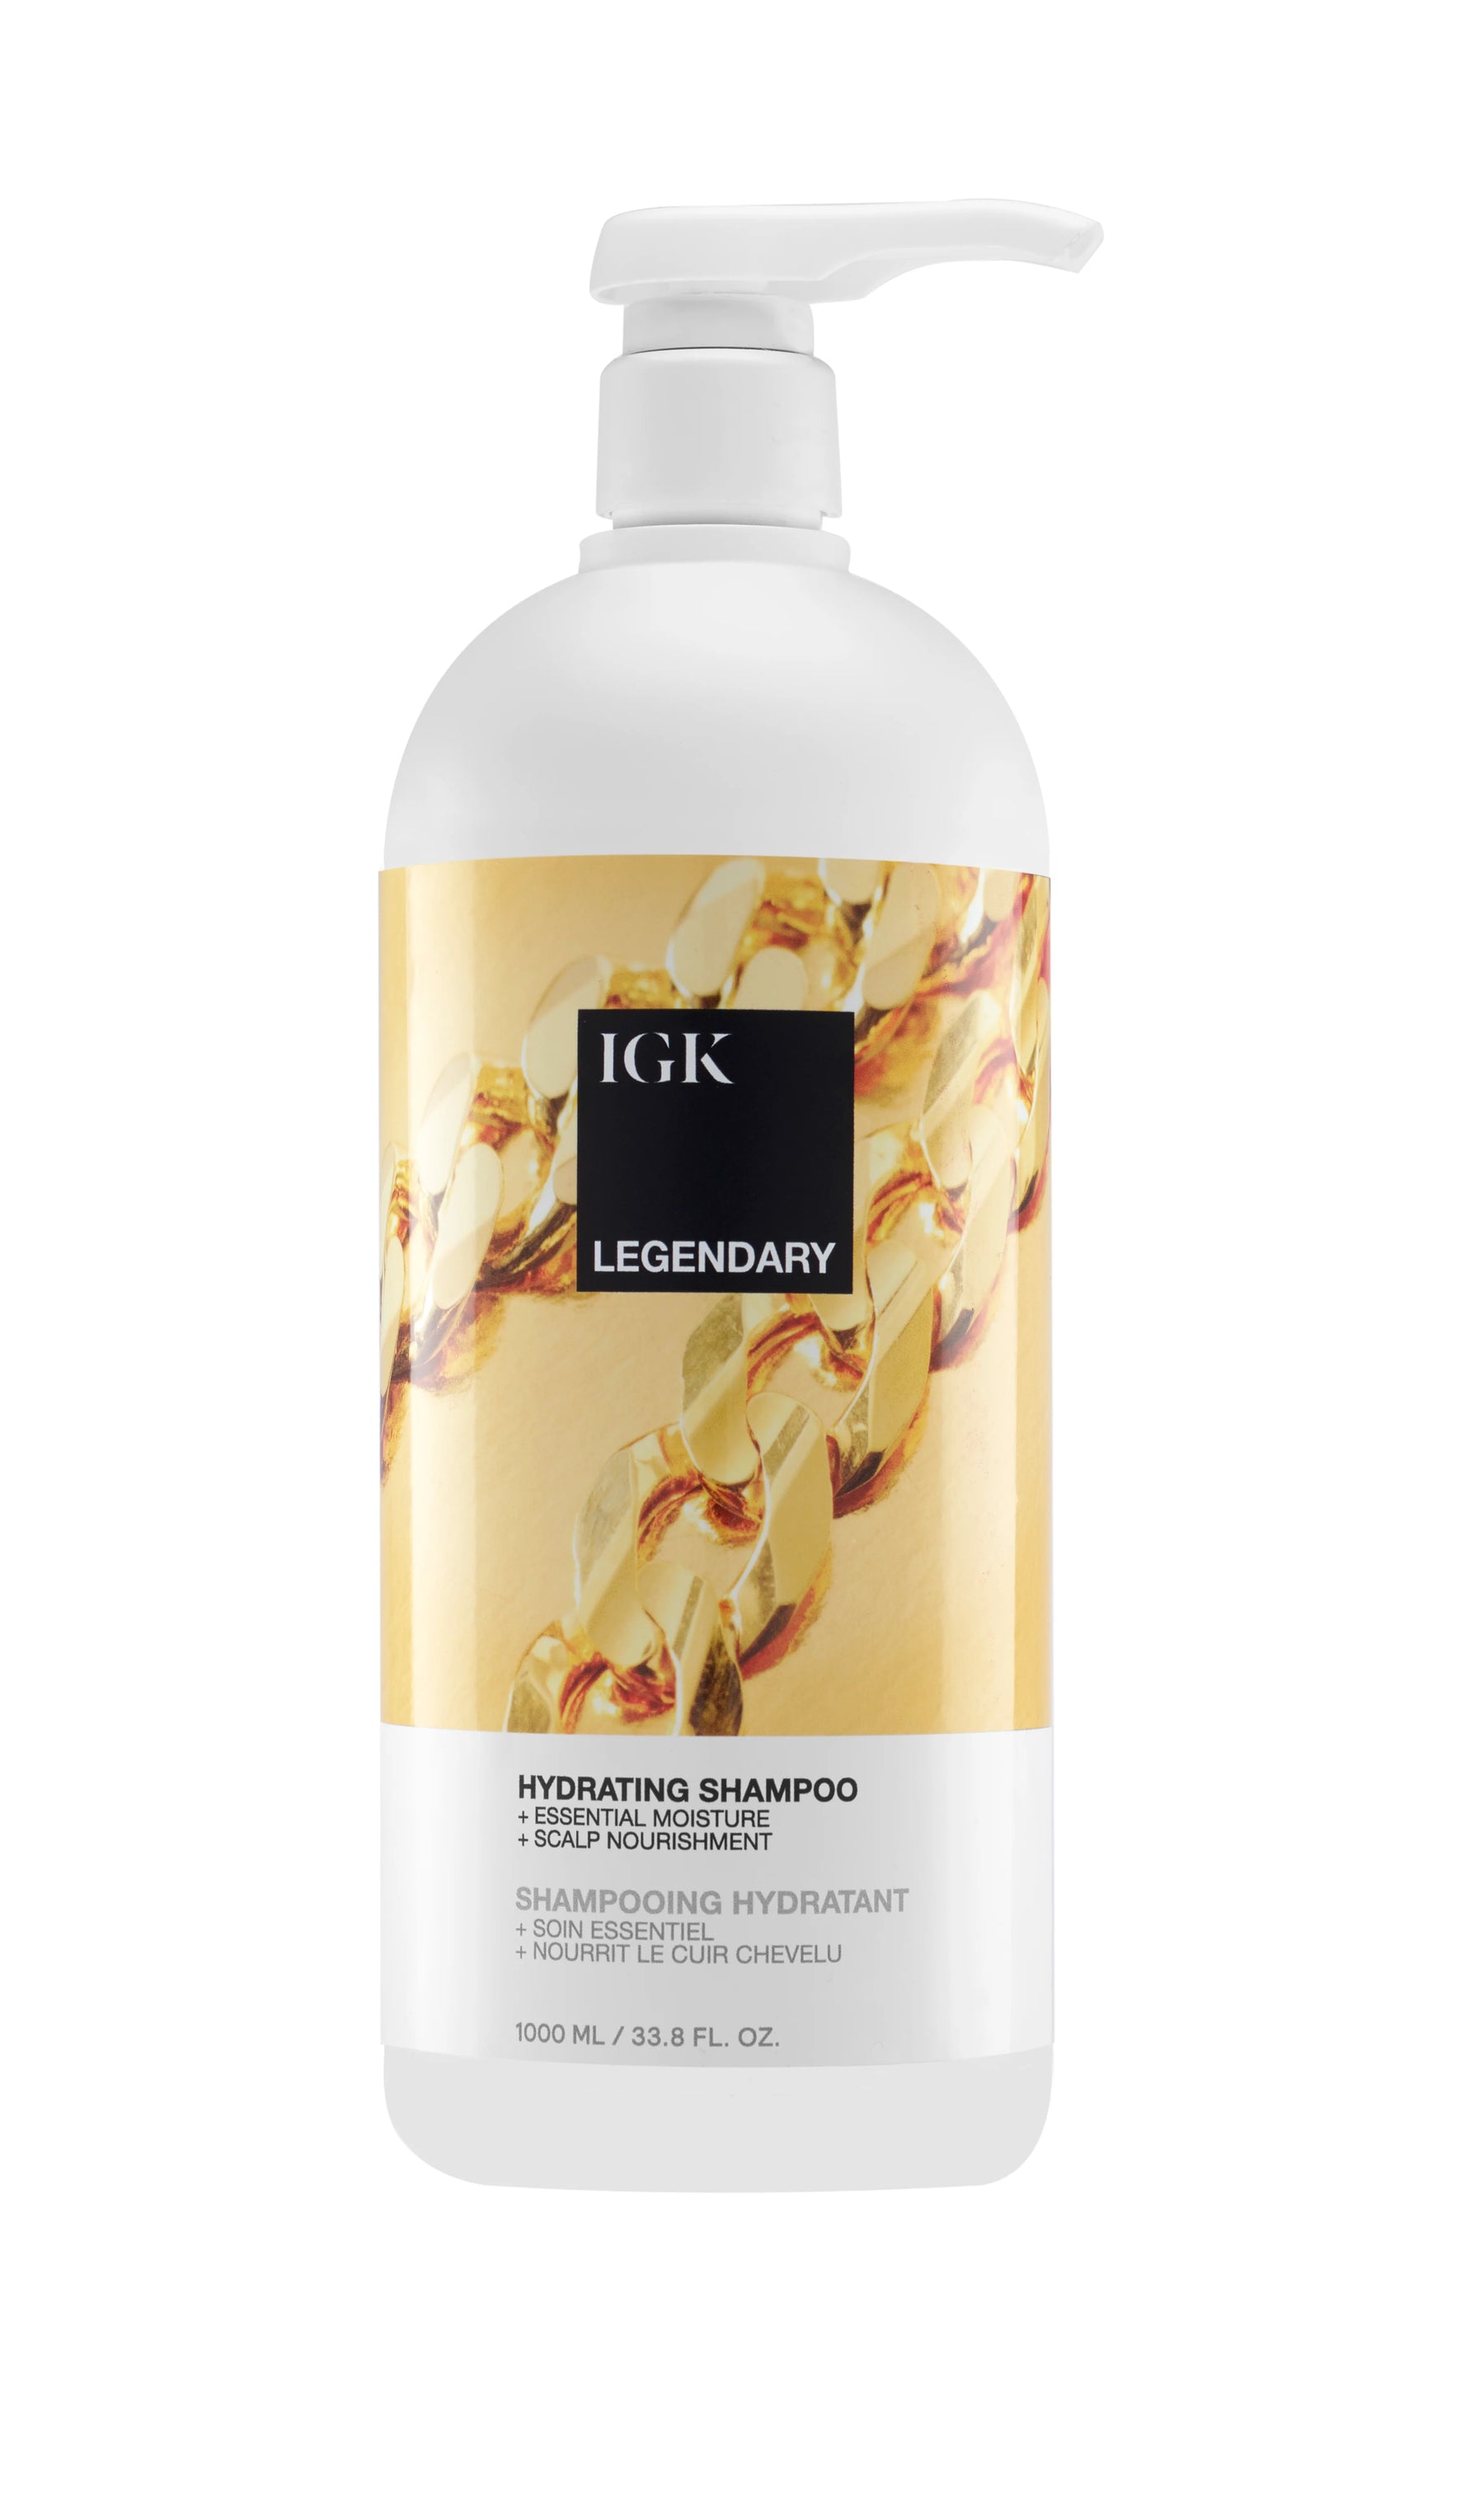 IGK Legendary Dream Shampoo